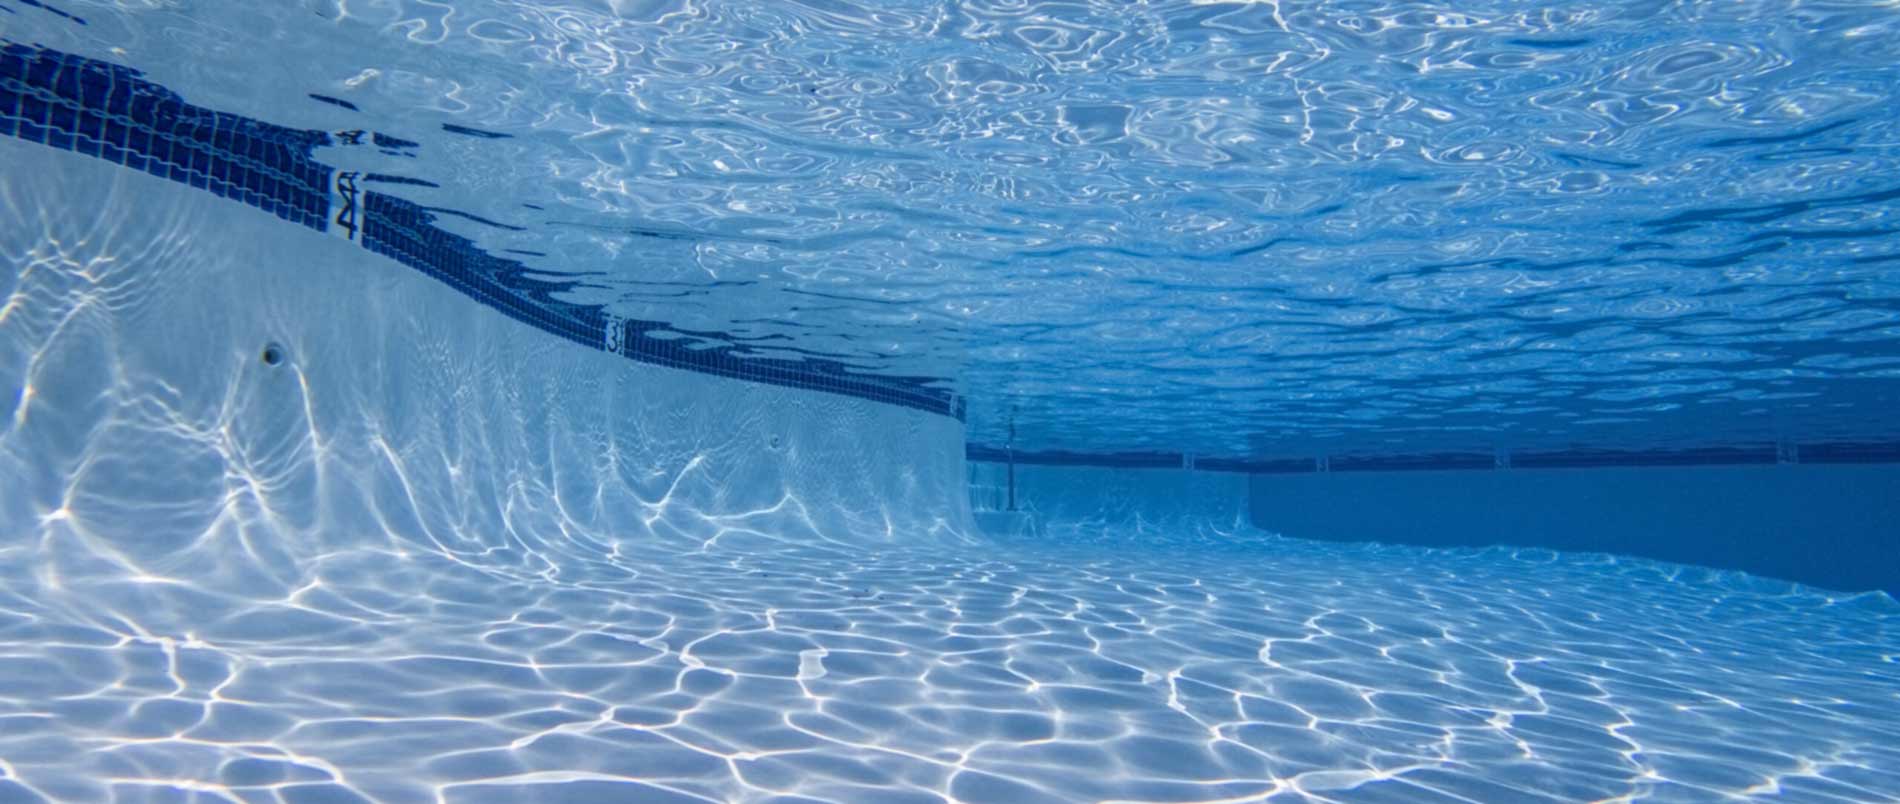 Underwater View of Pool